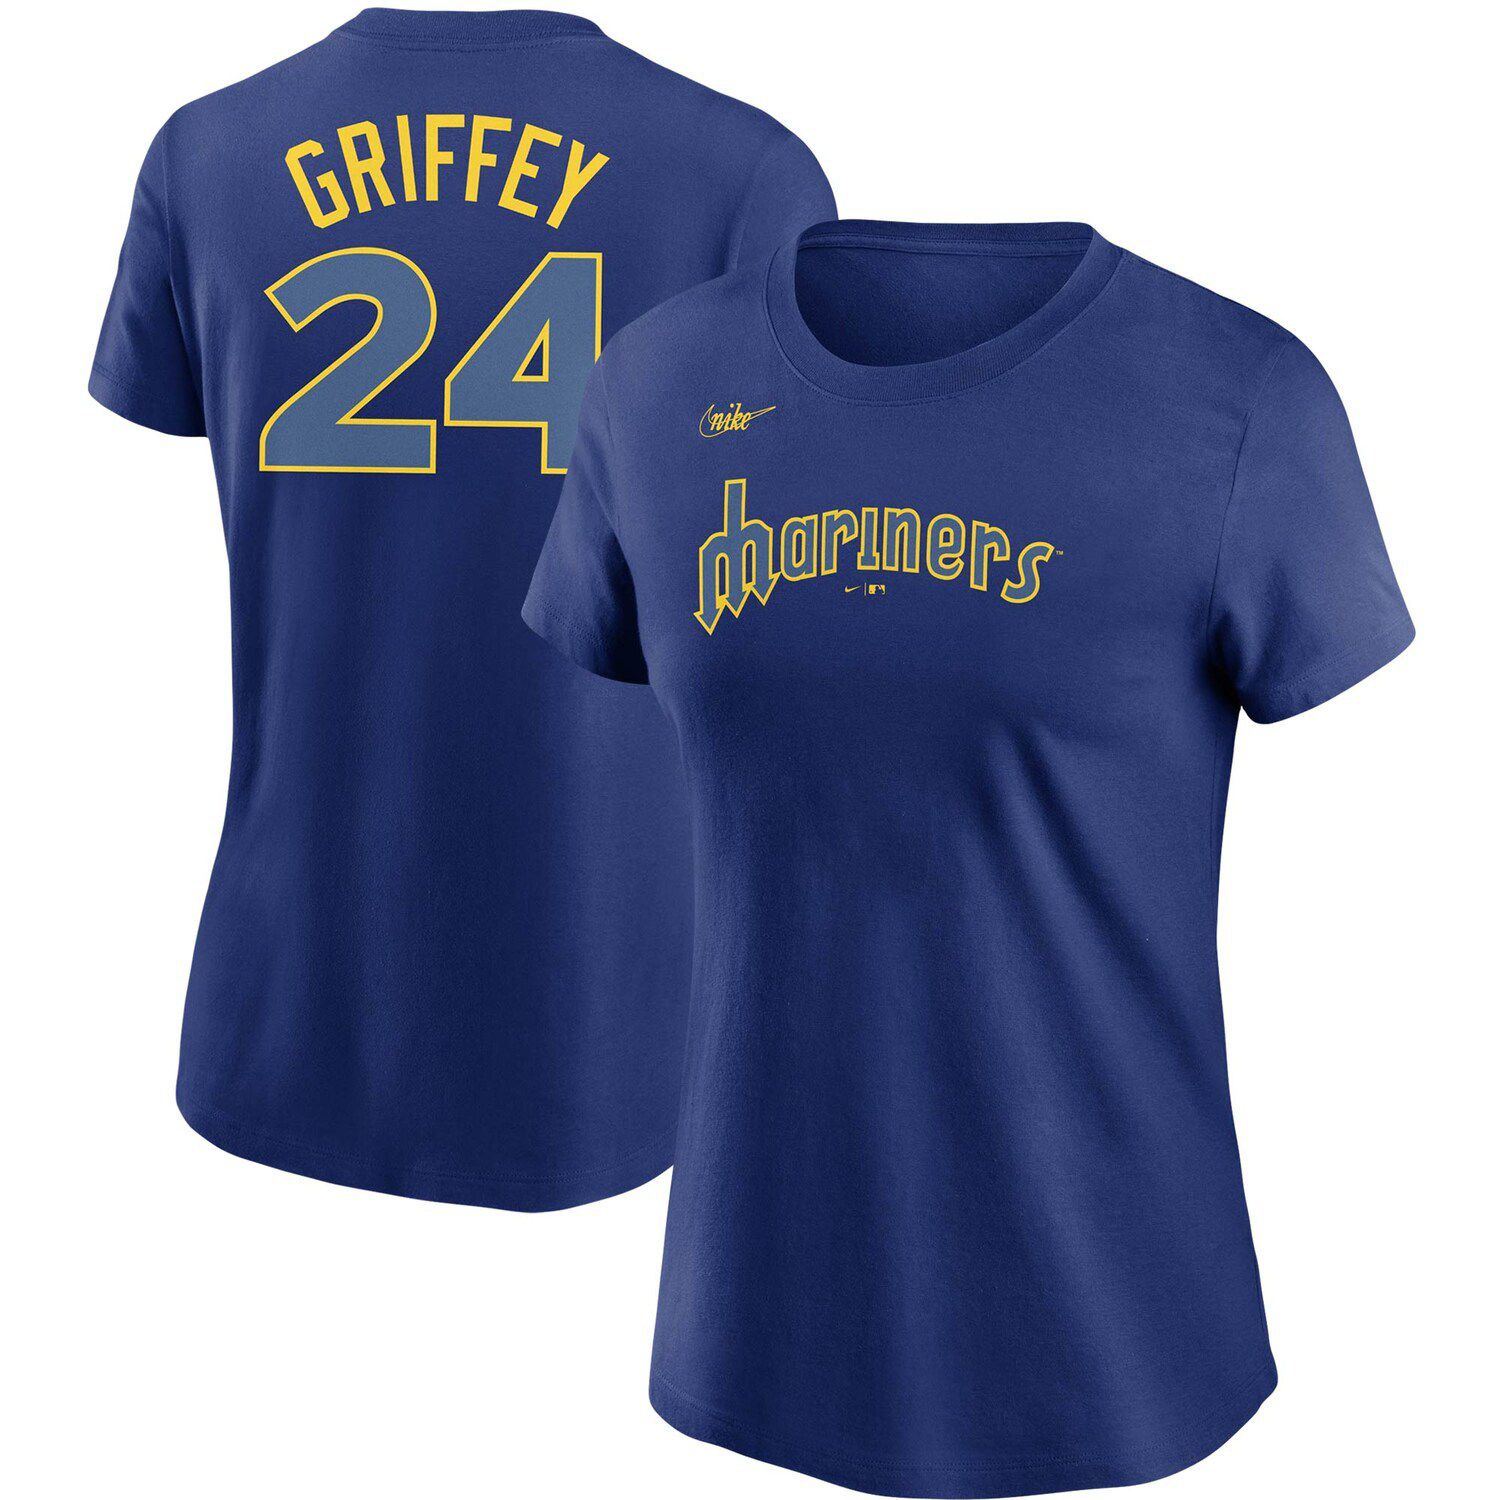 griffey jr shirt